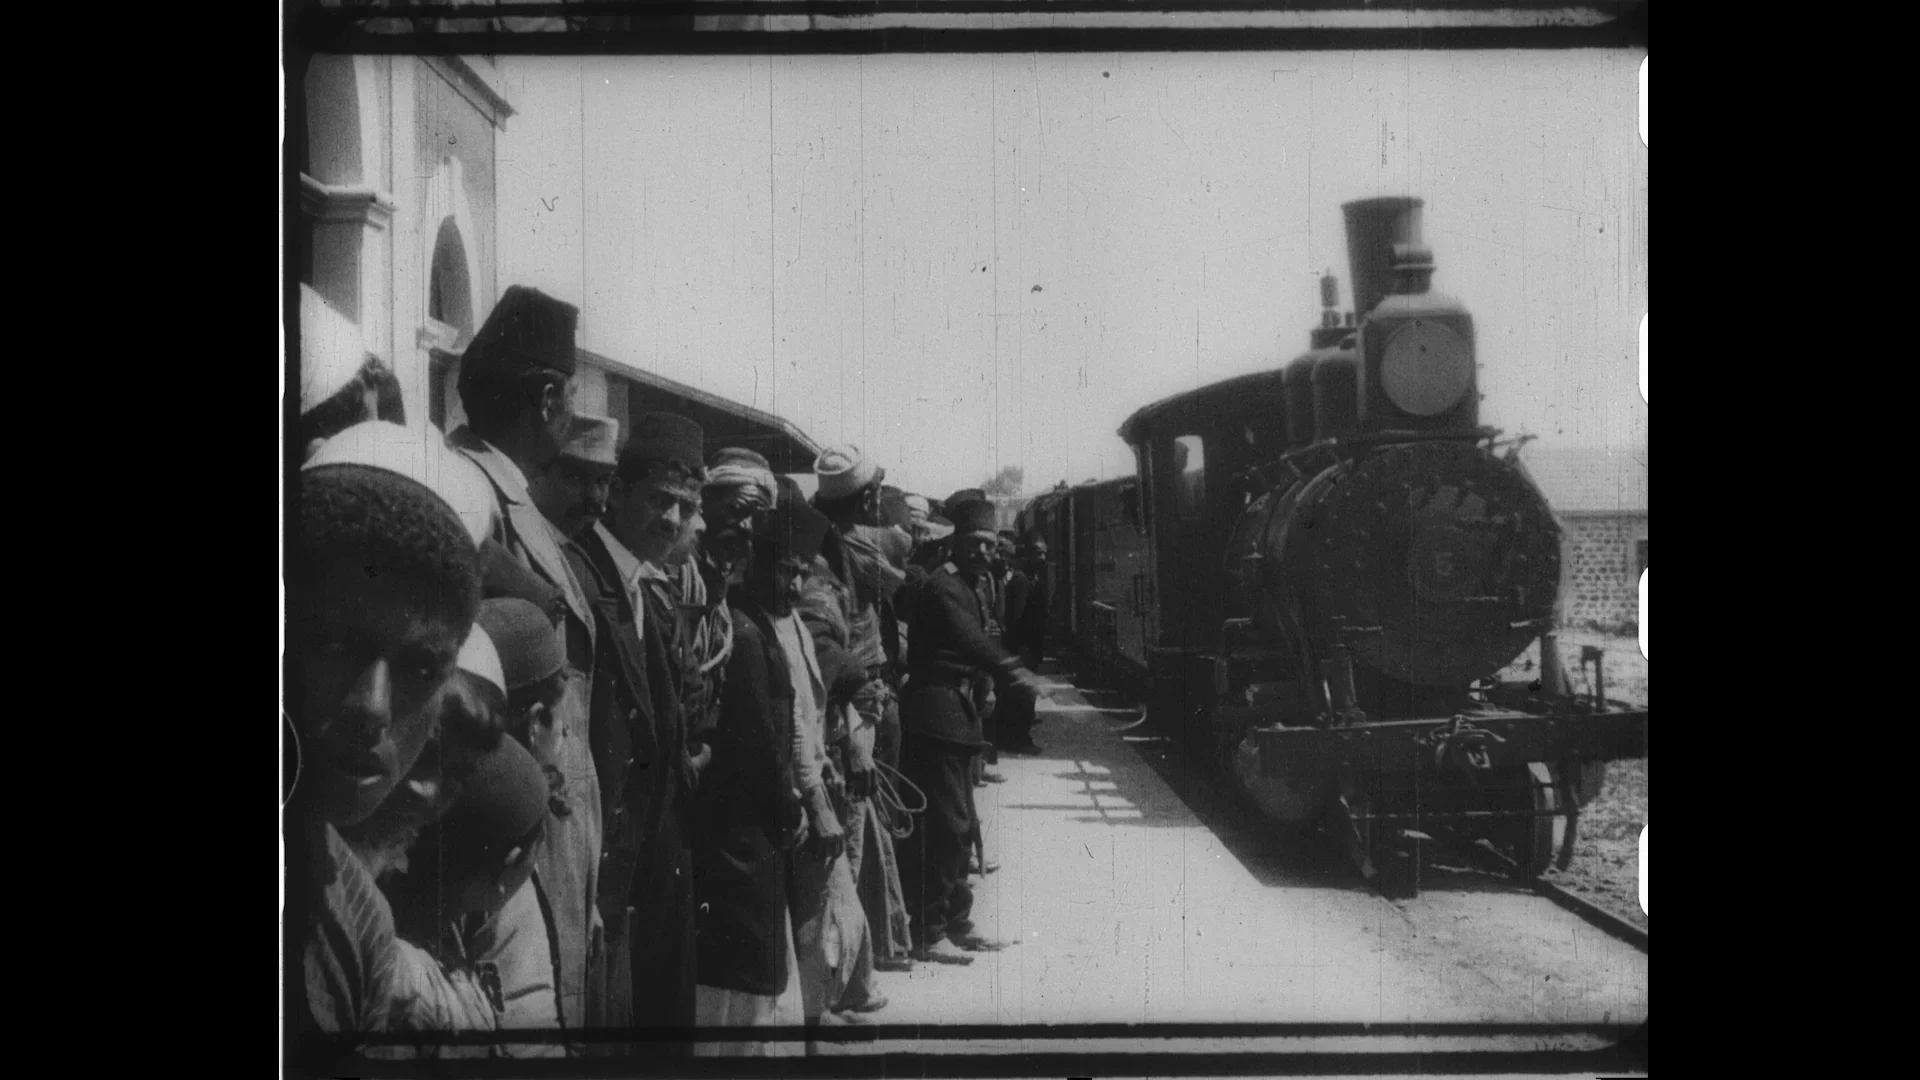 מתוך הסרט יפו, בית לחם, וירושלים בשנת 1896